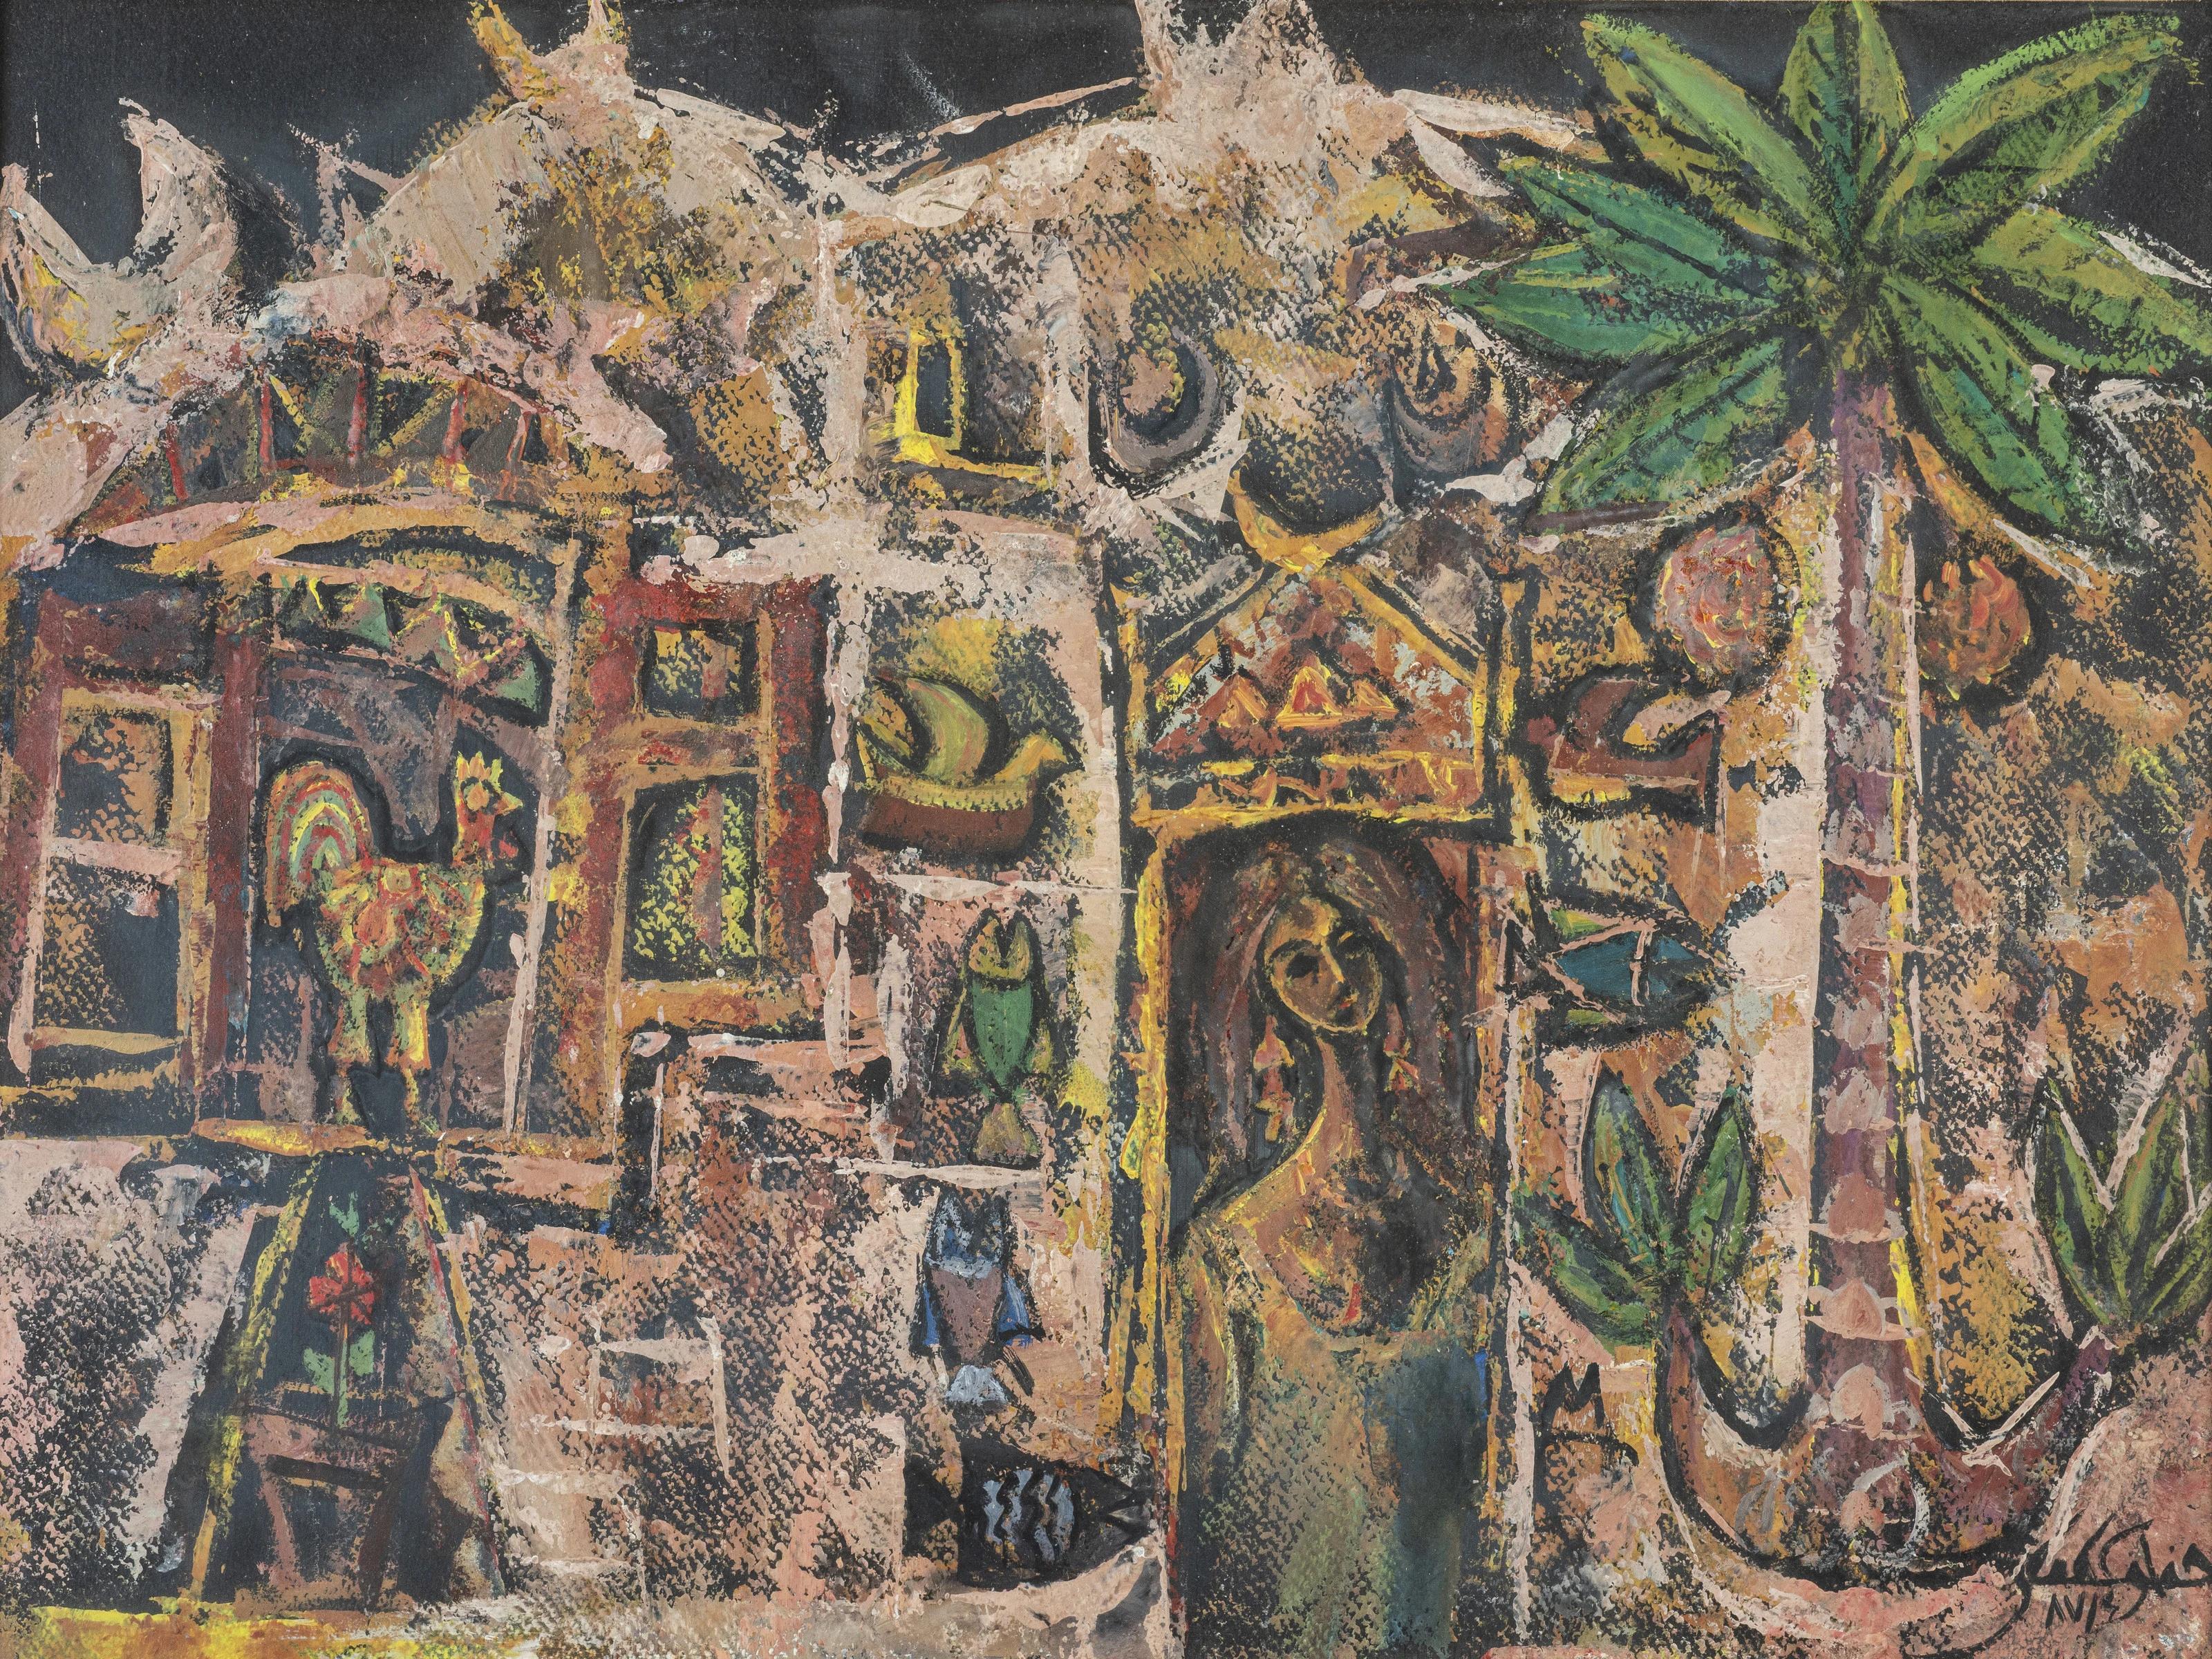 « Village Life », peinture à l'huile 12" x 20" pouces (1987) de Fathi Afifi

Fathy Afifi est un artiste égyptien d'après-guerre et contemporain né en 1950. 
Il a participé à des expositions locales et internationales au Caire, à Berlin et à Vienne.